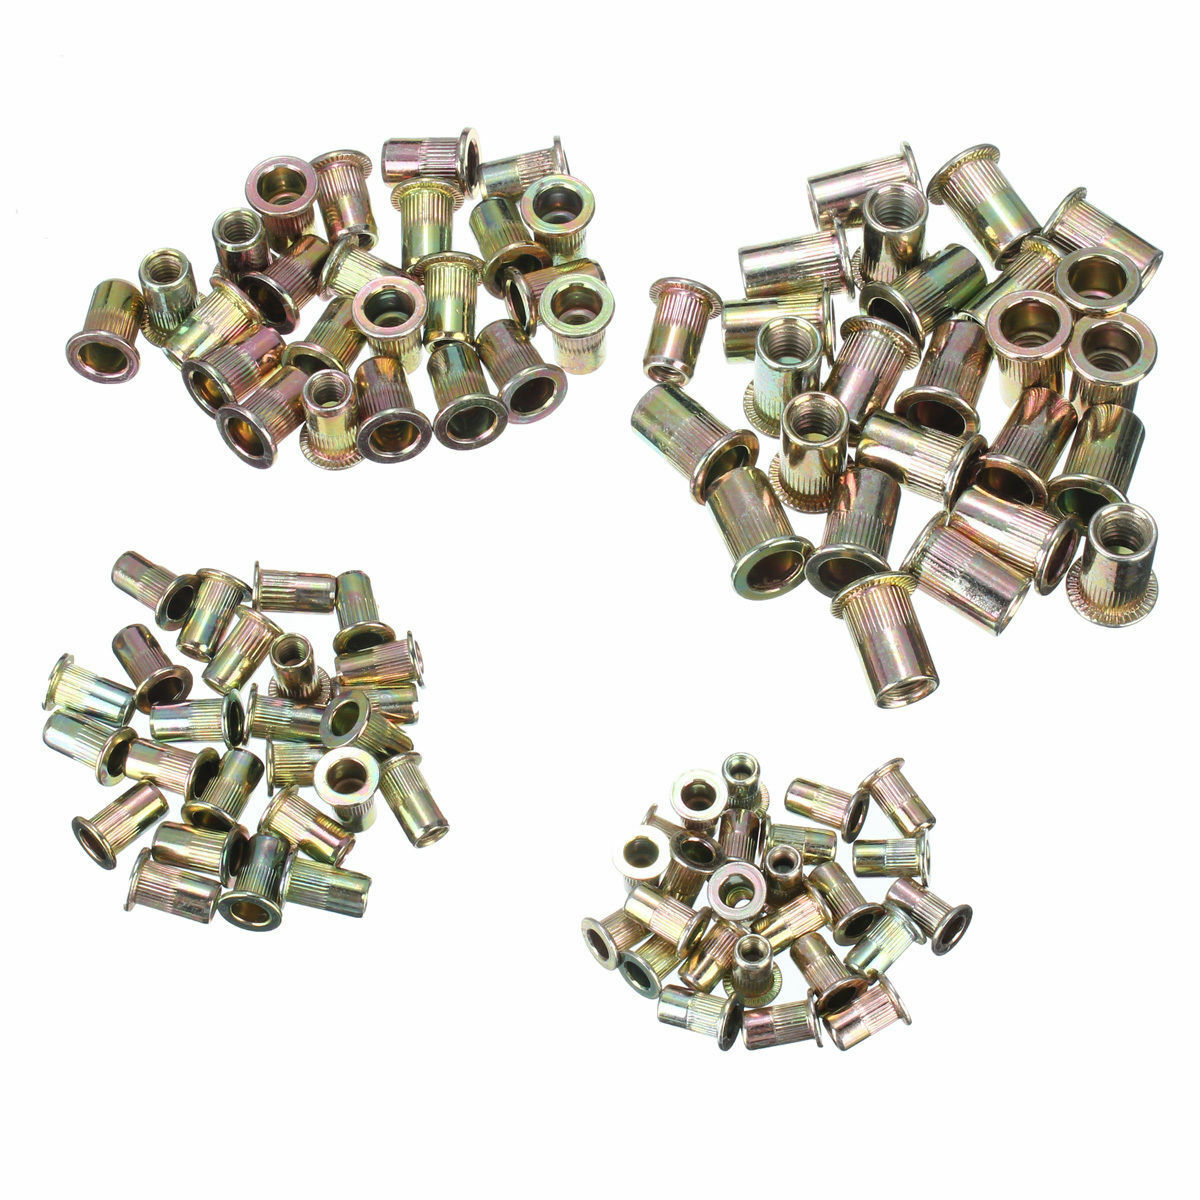 100X Carbon Steel Thread Head Blind Rivet Nuts Rivnut Nutserts Blindnut M4/5/6/8